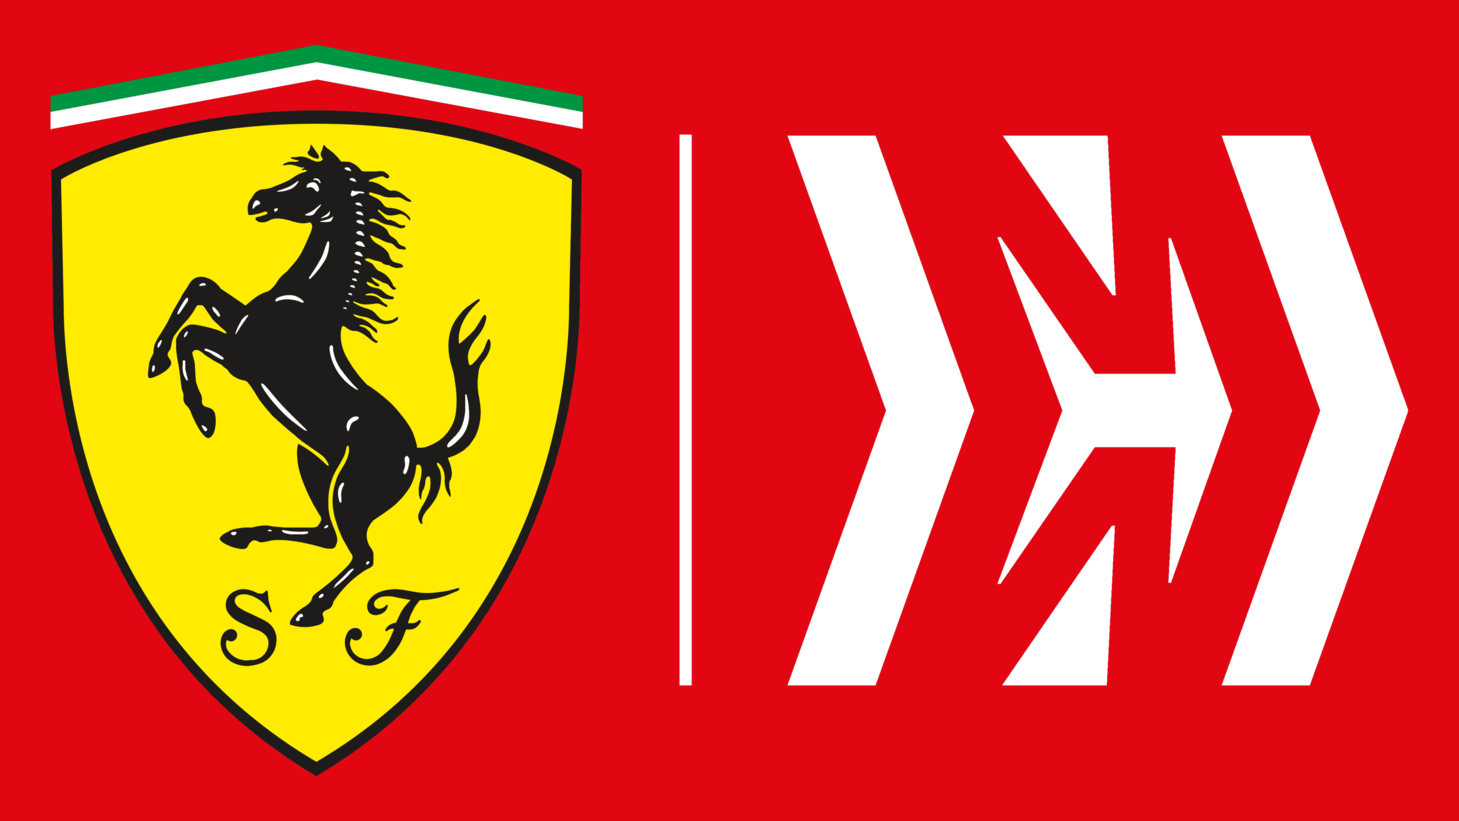 Ferrari scuderia symbol